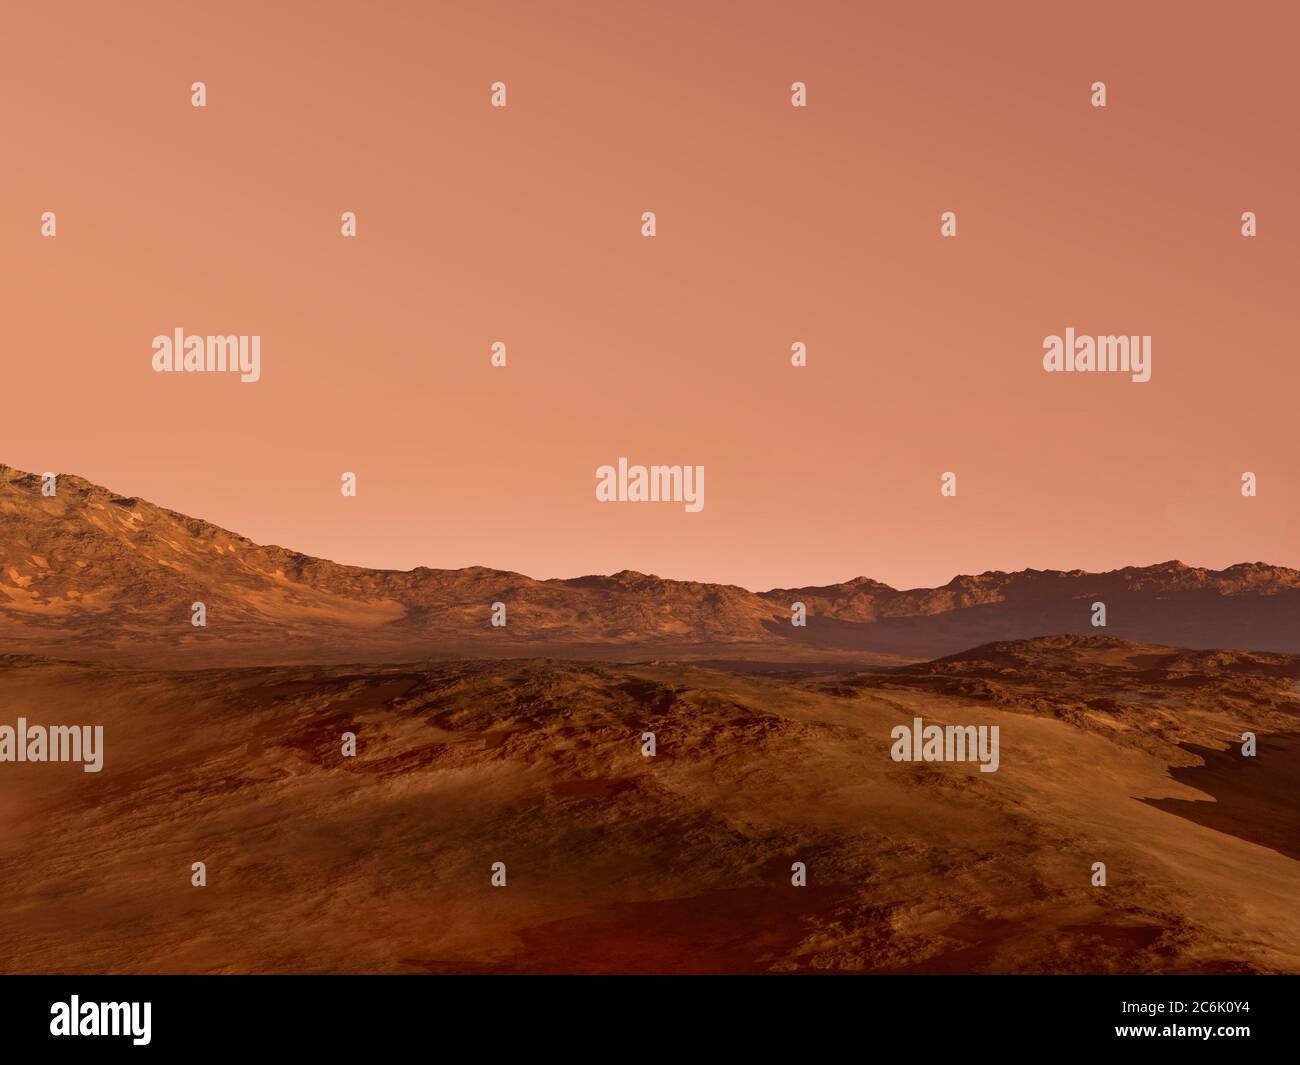 Rendu 3D de paysage Mars avec un terrain rocailleux rouge, pour la science-fiction ou l'exploration spatiale. Banque D'Images